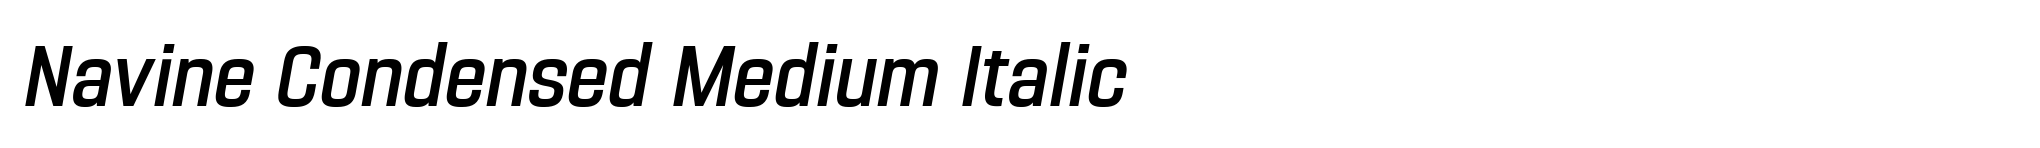 Navine Condensed Medium Italic image